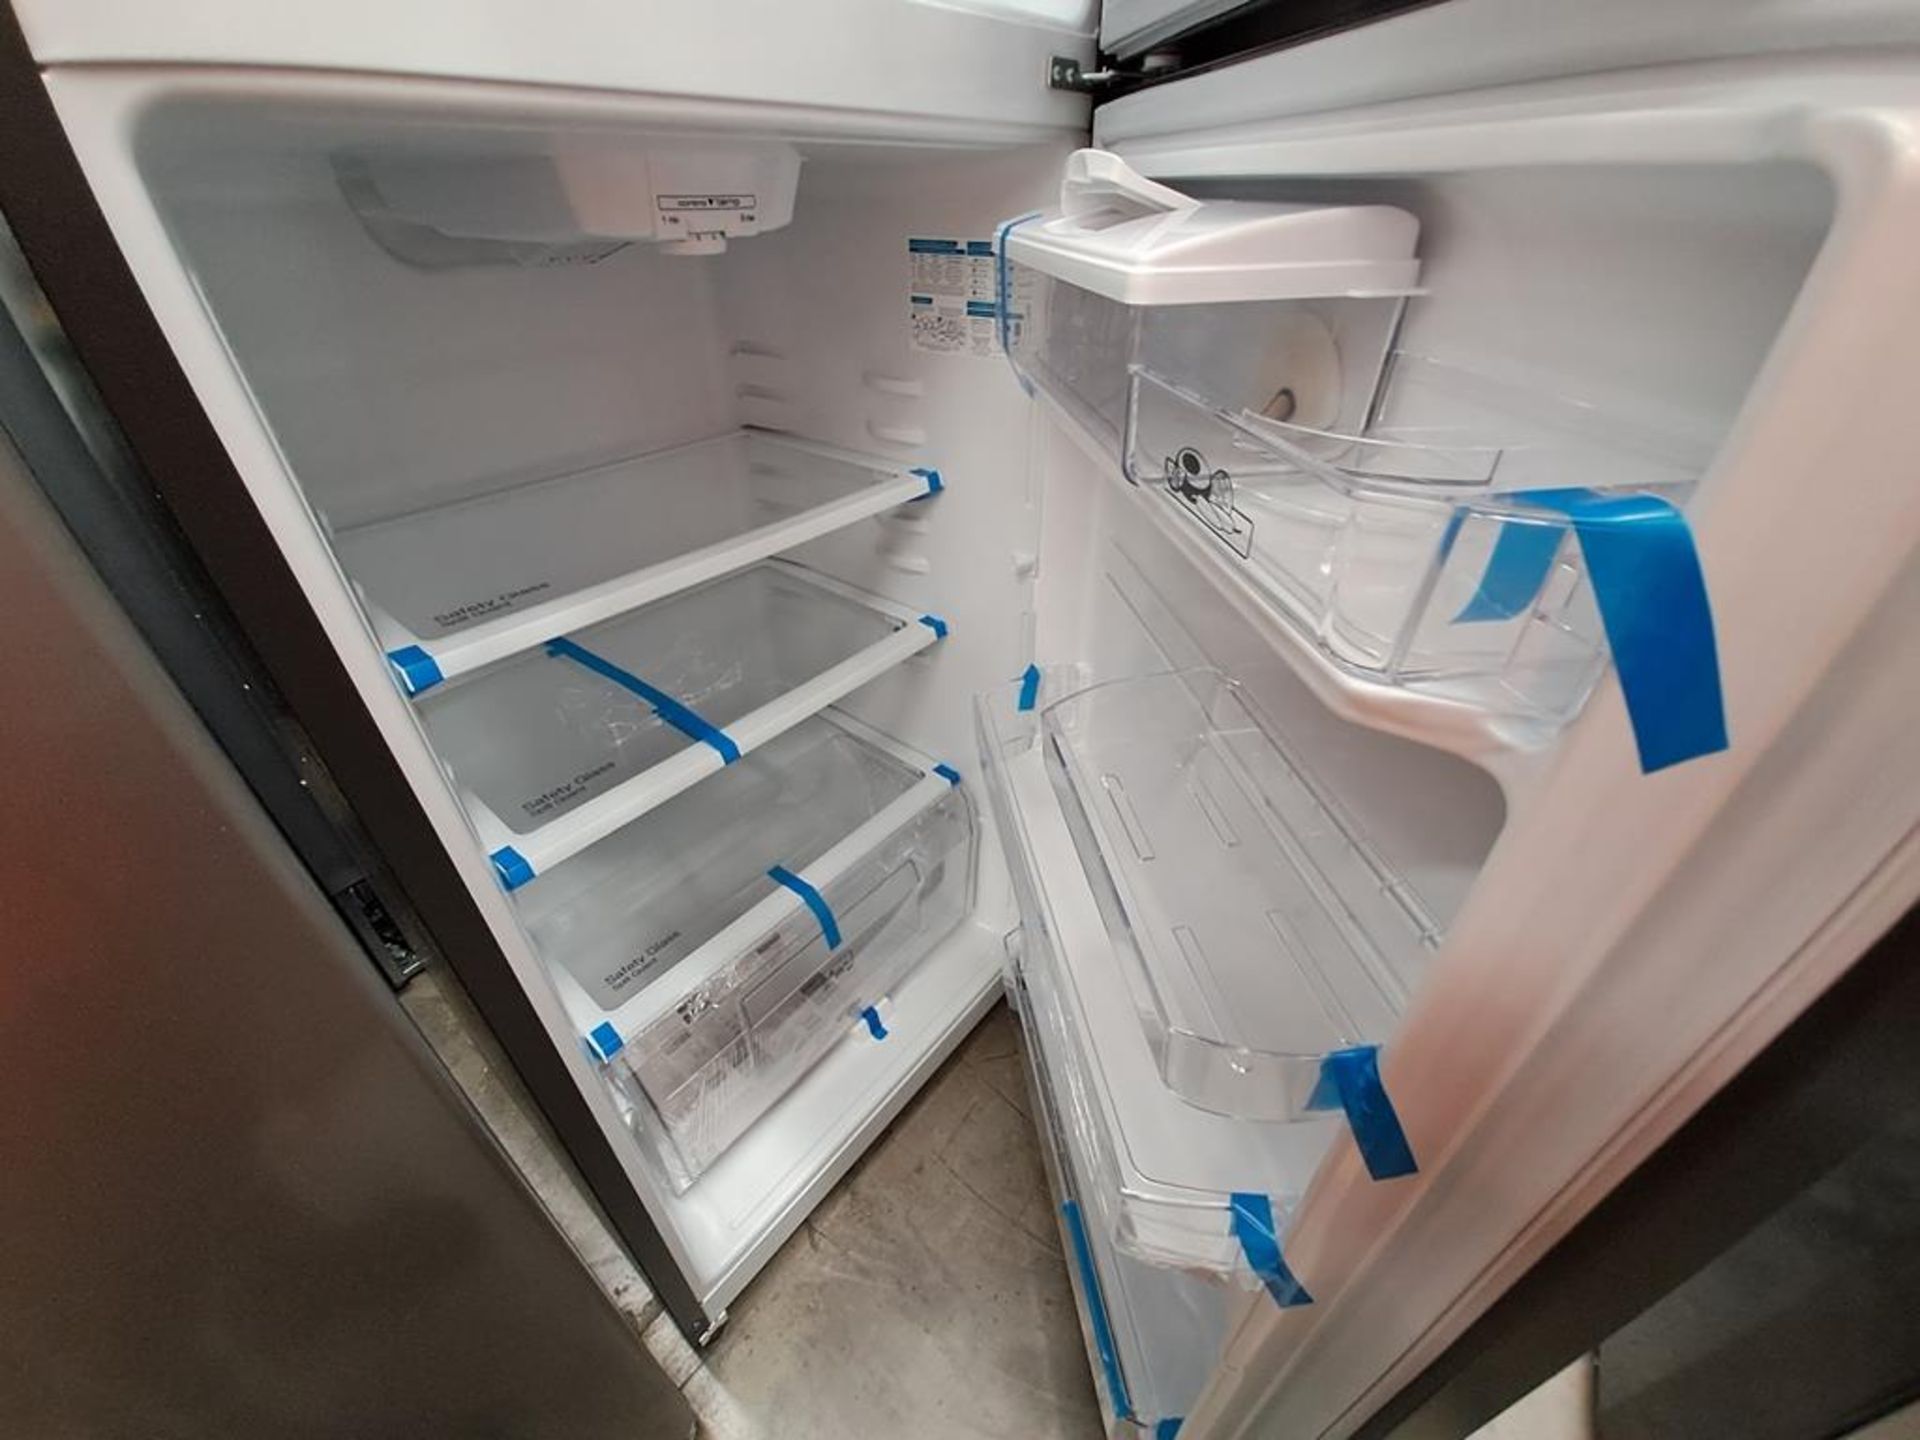 (Equipo nuevo) Lote de 2 refrigeradores contiene: 1 refrigerador con dispensador de agua Marca MABE - Image 9 of 10